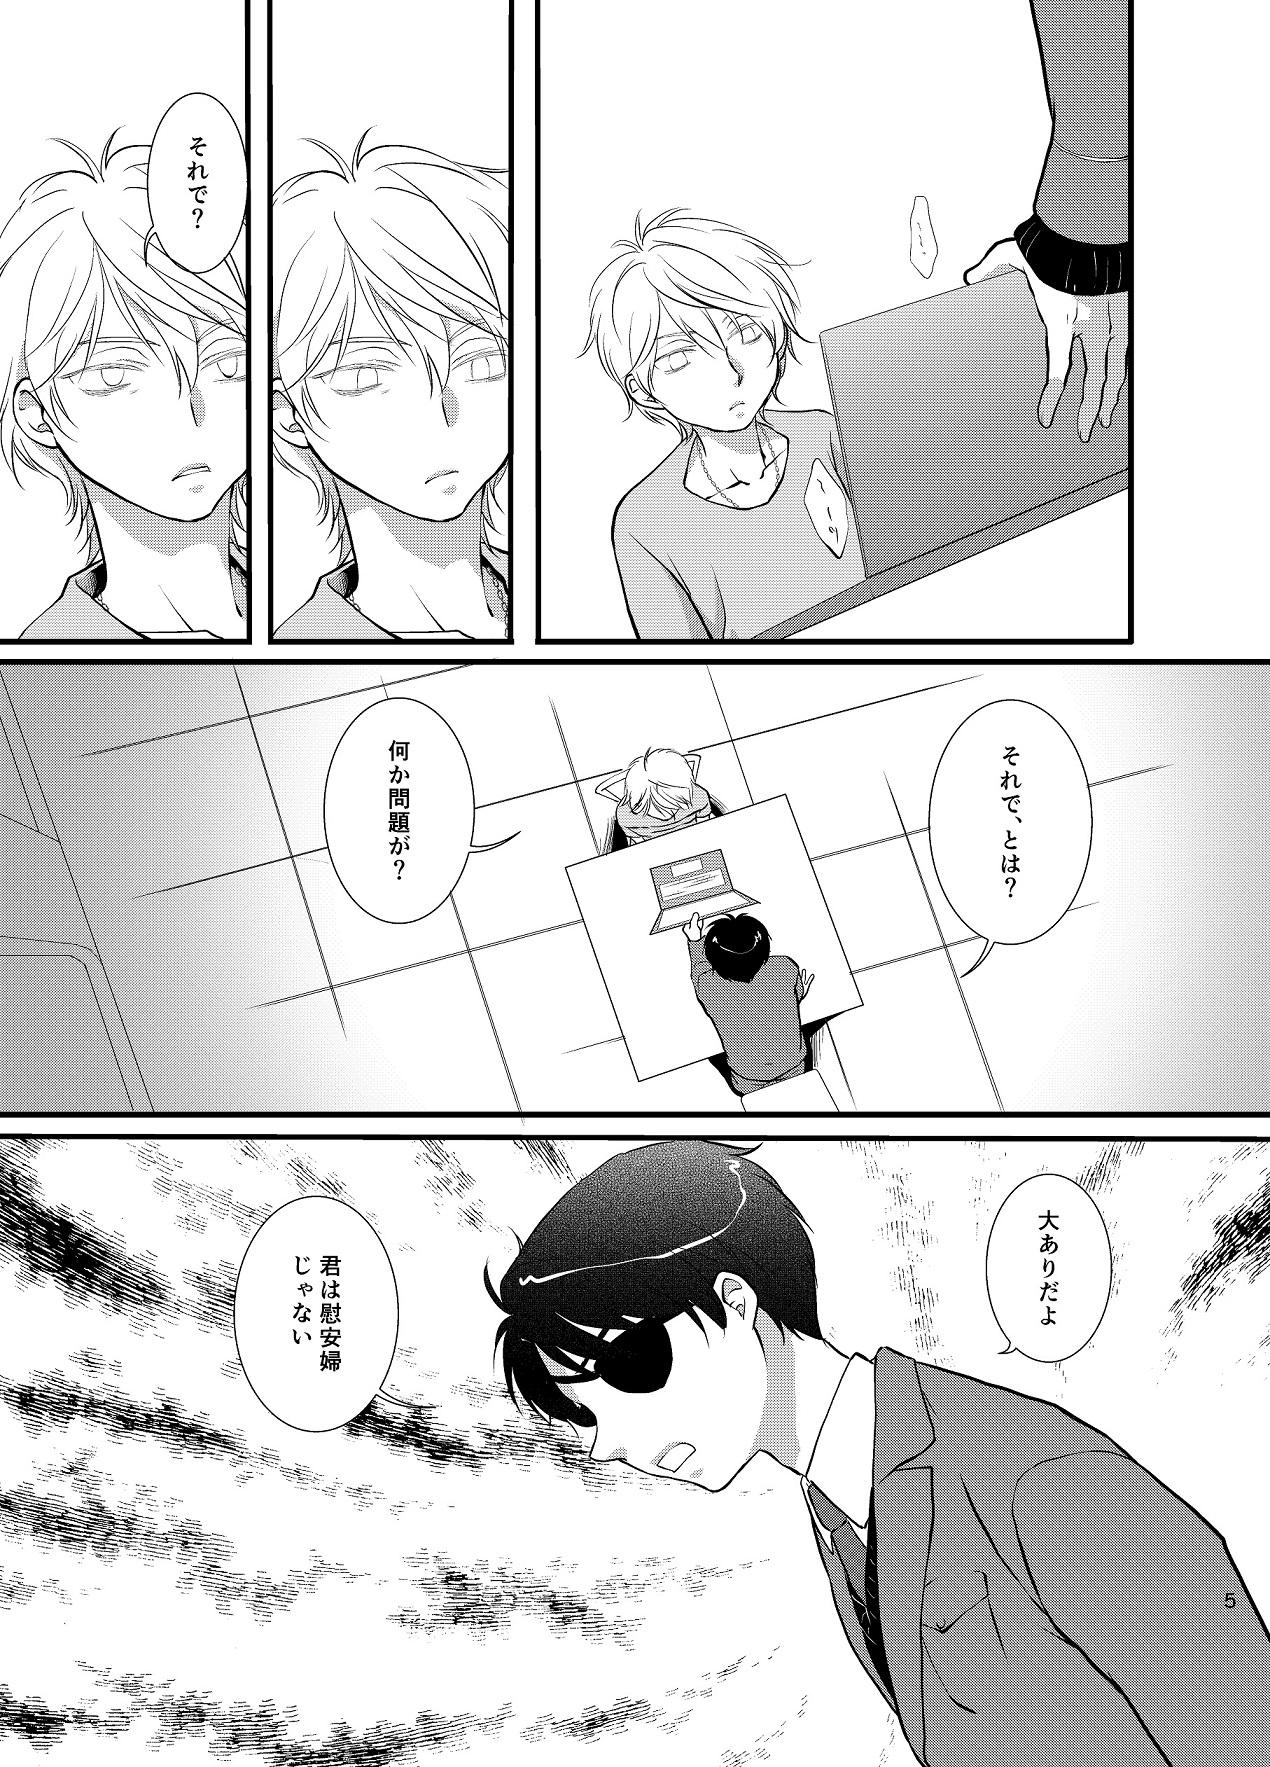 Boy Tsumi to Batsu - Aldnoah.zero Gag - Page 6